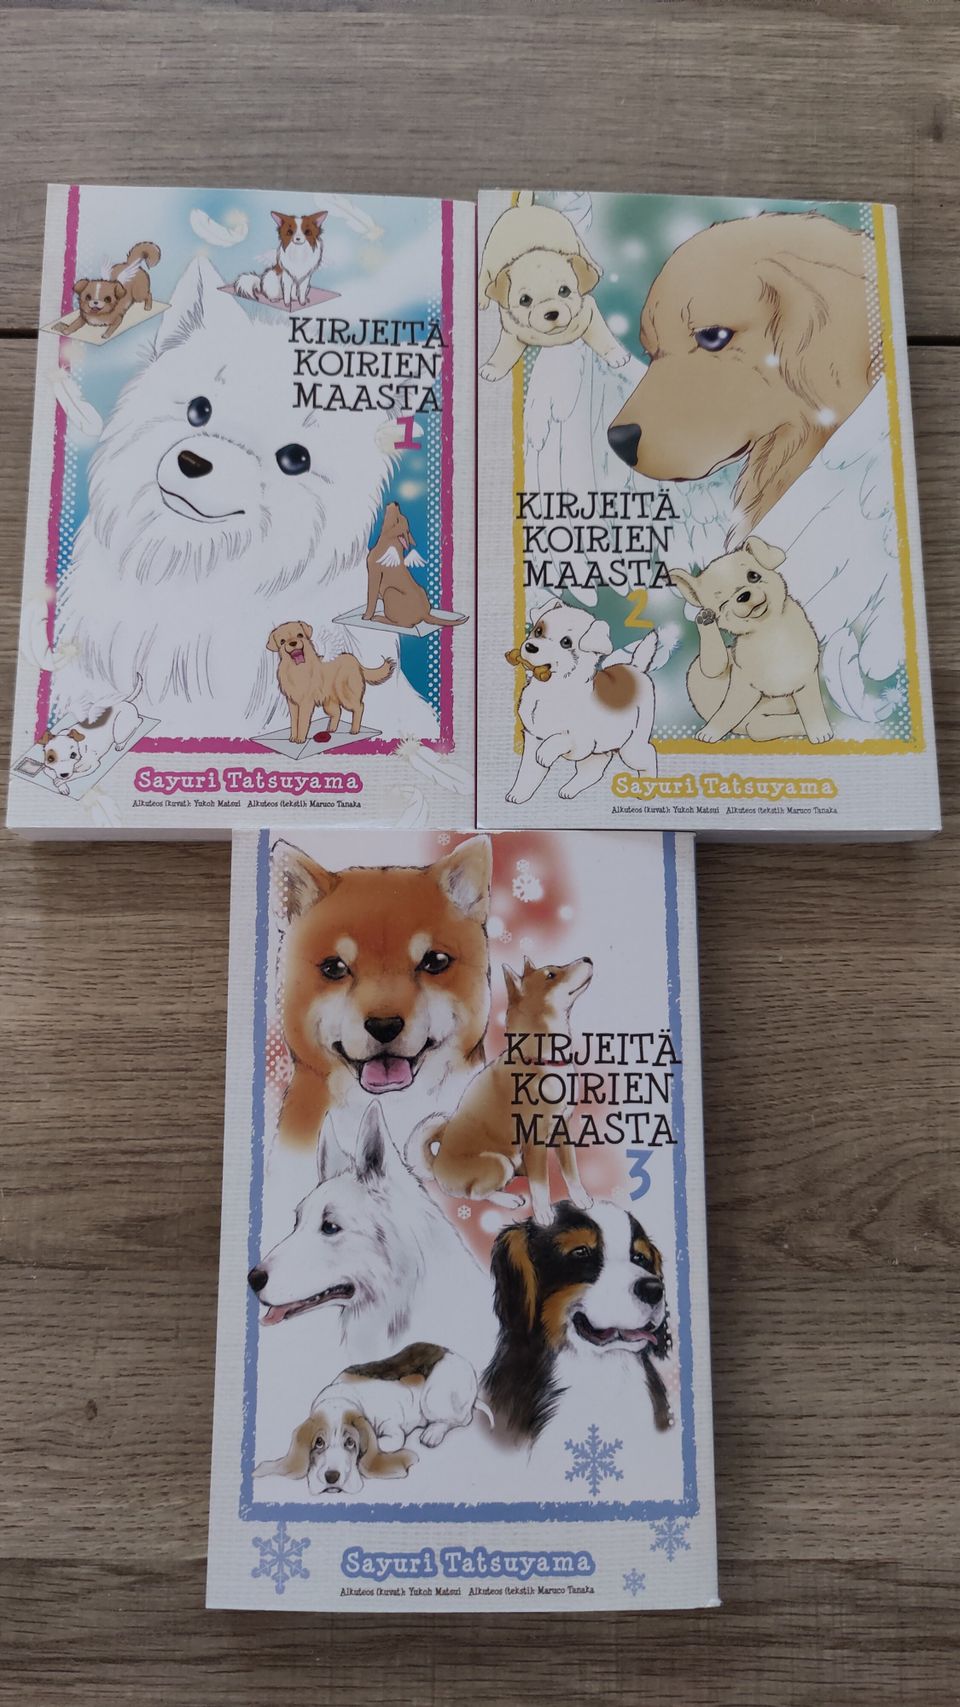 Kirjeitä Koirien maasta mangat 3kpl